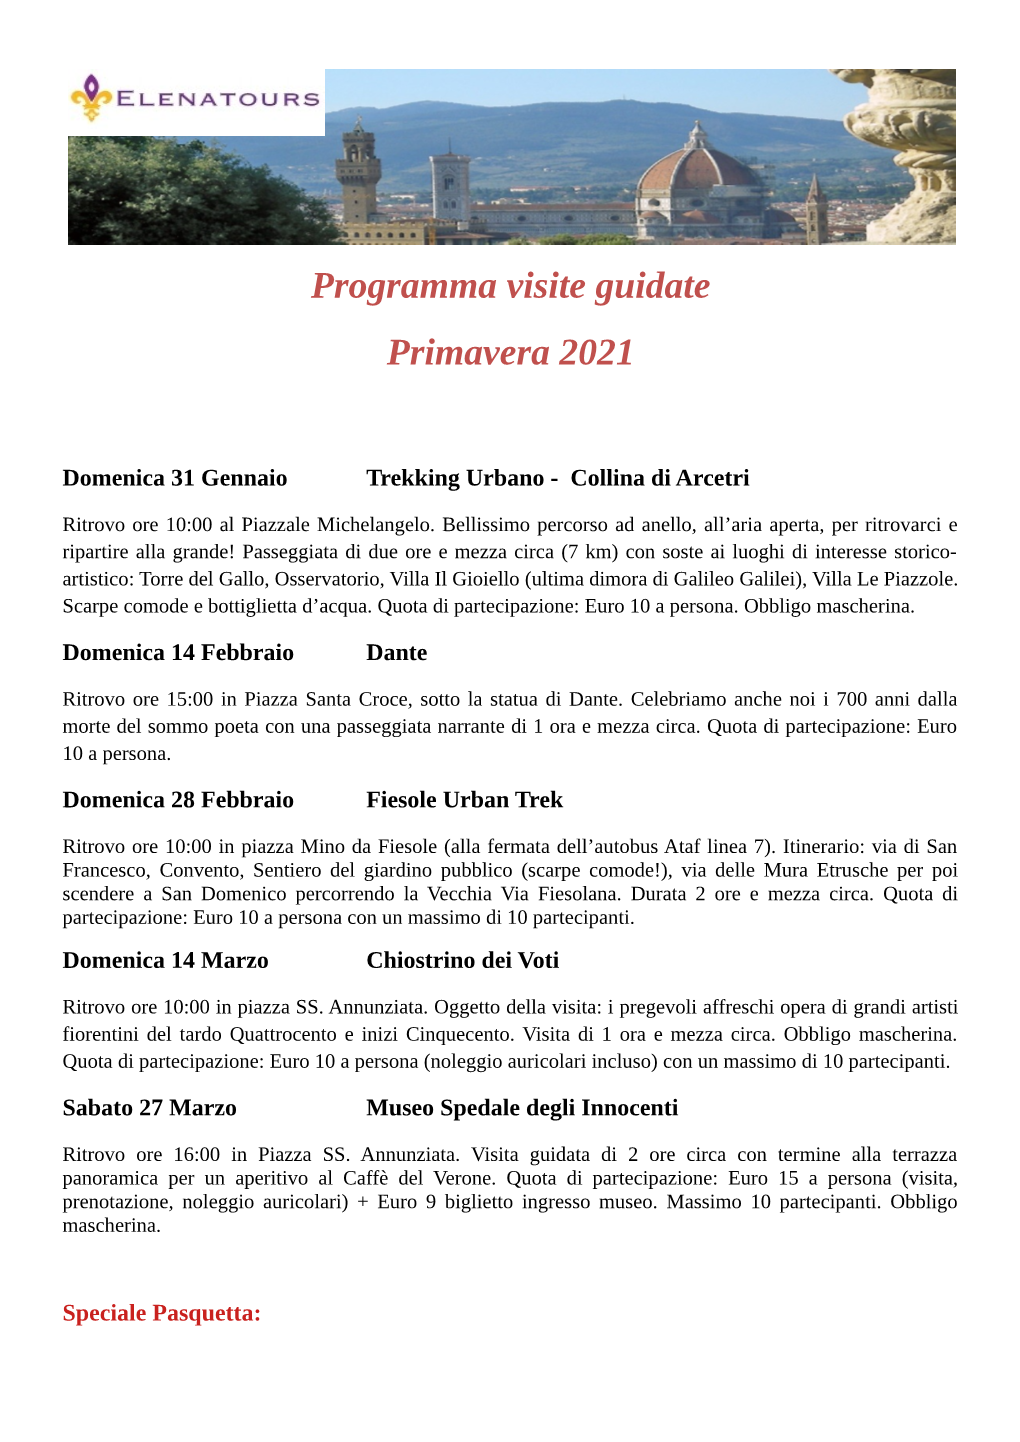 Programma Visite Guidate Primavera 2021